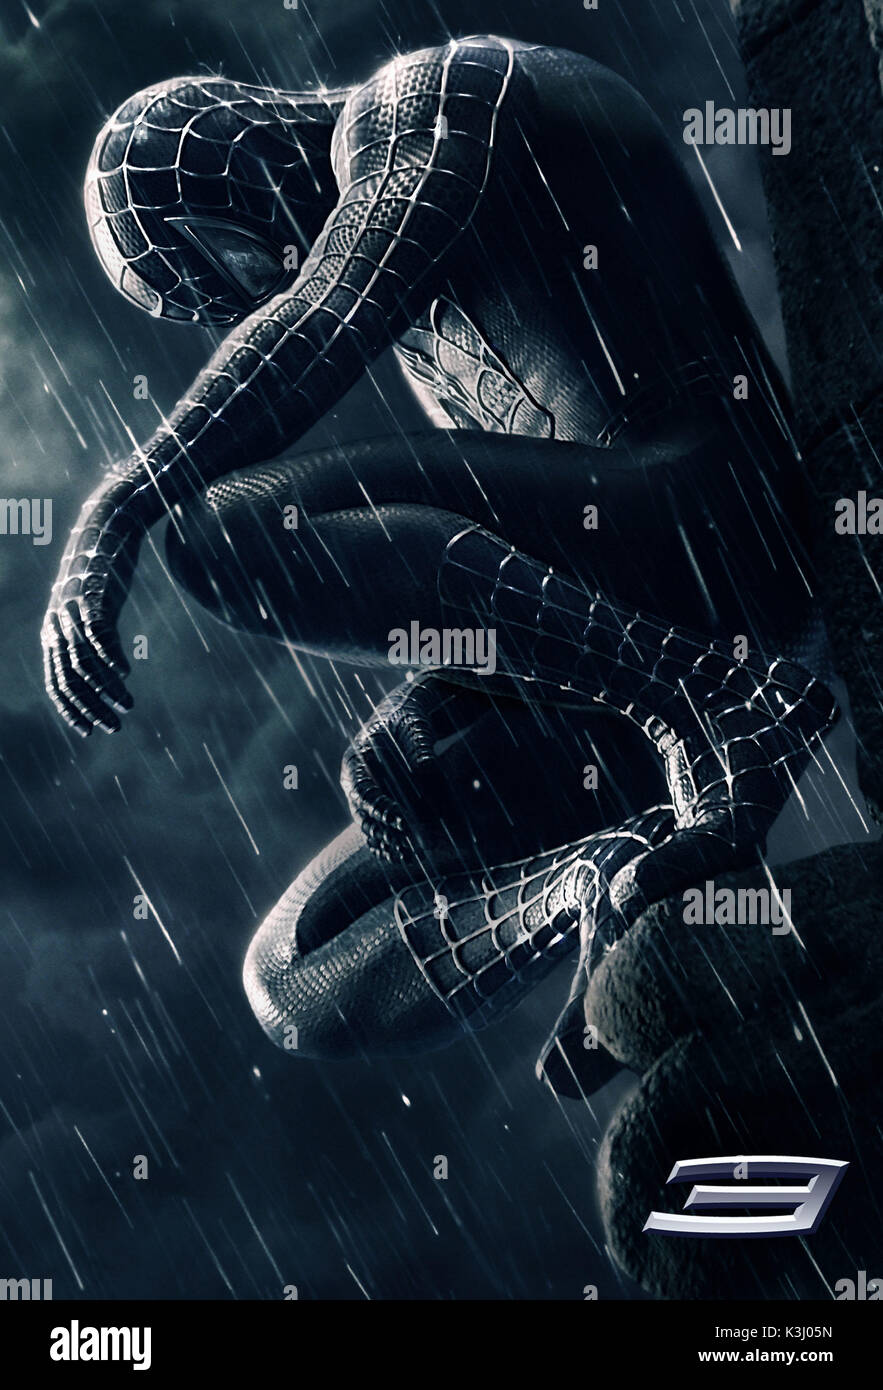 Spider-man 3 die Verwendung des Bildes MUSS mit der folgenden Beschriftung versehen werden. Die Bildunterschrift bestätigt, dass Spider-man einen schwarzen Anzug trägt. Es wird also verstanden, dass es sich NICHT um ein Schwarz-Weiß-Foto handelt: Man könnte denken, dass man sich ein Schwarz-Weiß-Foto ansieht. Schau genau hin, Spider-man trägt einen schwarzen Anzug in Spider-man 3. Tobey Maguire kehrt ab 2007. Mai in der Rolle von Peter Parker/Spider-man in Spider-man 3 zurück. SPIDER-MAN 3 [US 2007] Sie denken vielleicht, dass Sie sich ein Schwarzweißfoto ansehen. Schau genau hin, Spider-man trägt einen schwarzen Anzug in Spider-man 3' Spider-man 3 US Stockfoto